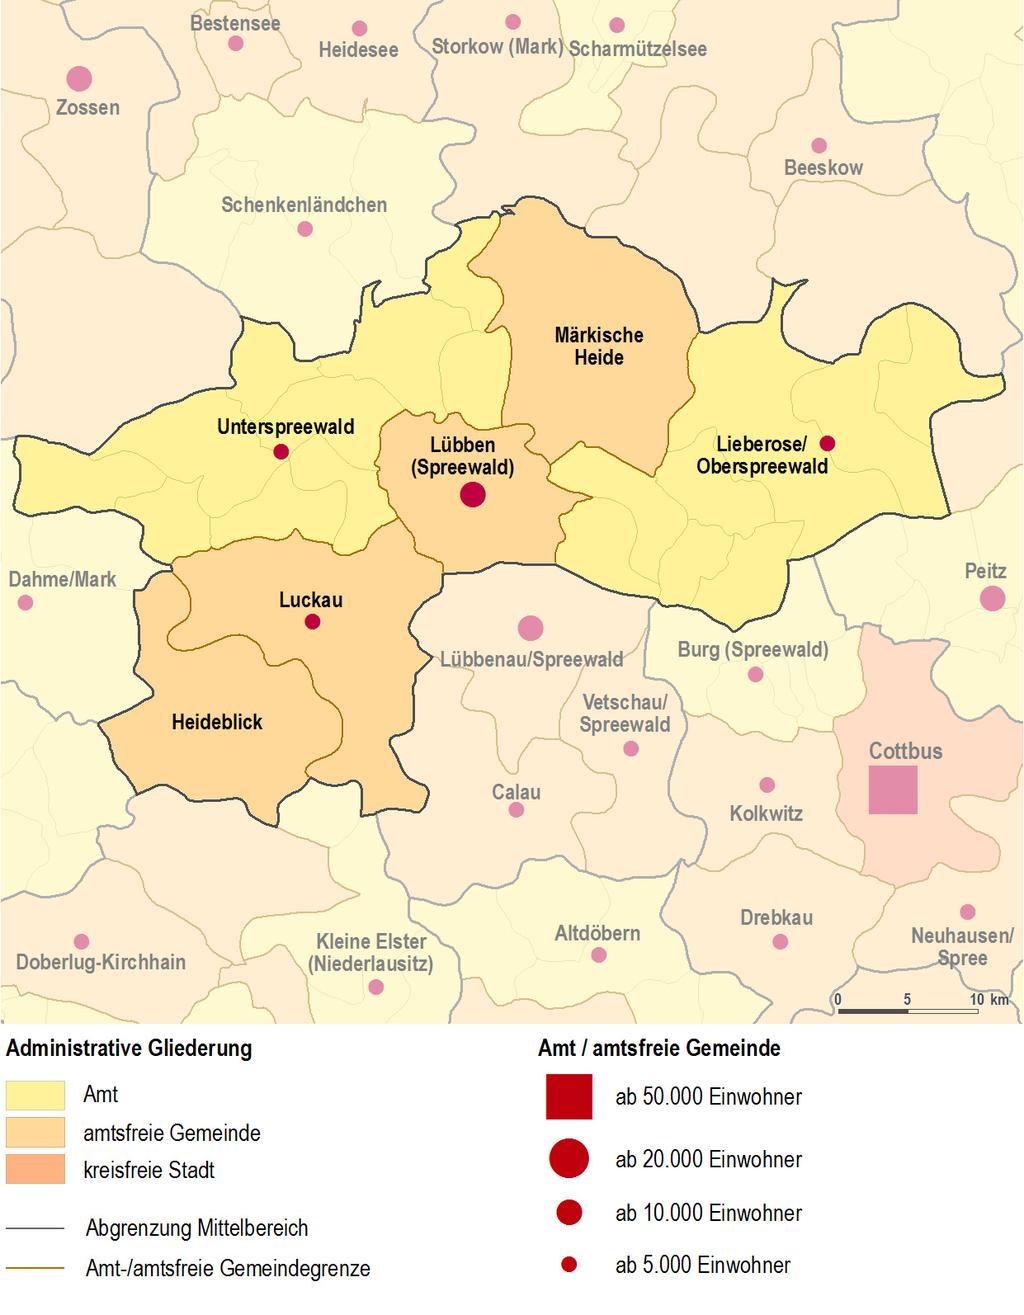 I. Räumliche Lage und administrative Gliederung Verwaltungsgliederung (Stand 2014) Fläche des Mittelbereichs Lübben (Spreewald) (Stand 2014) Fläche des Mittelbereichs (in km²) (in Prozent) Lübben